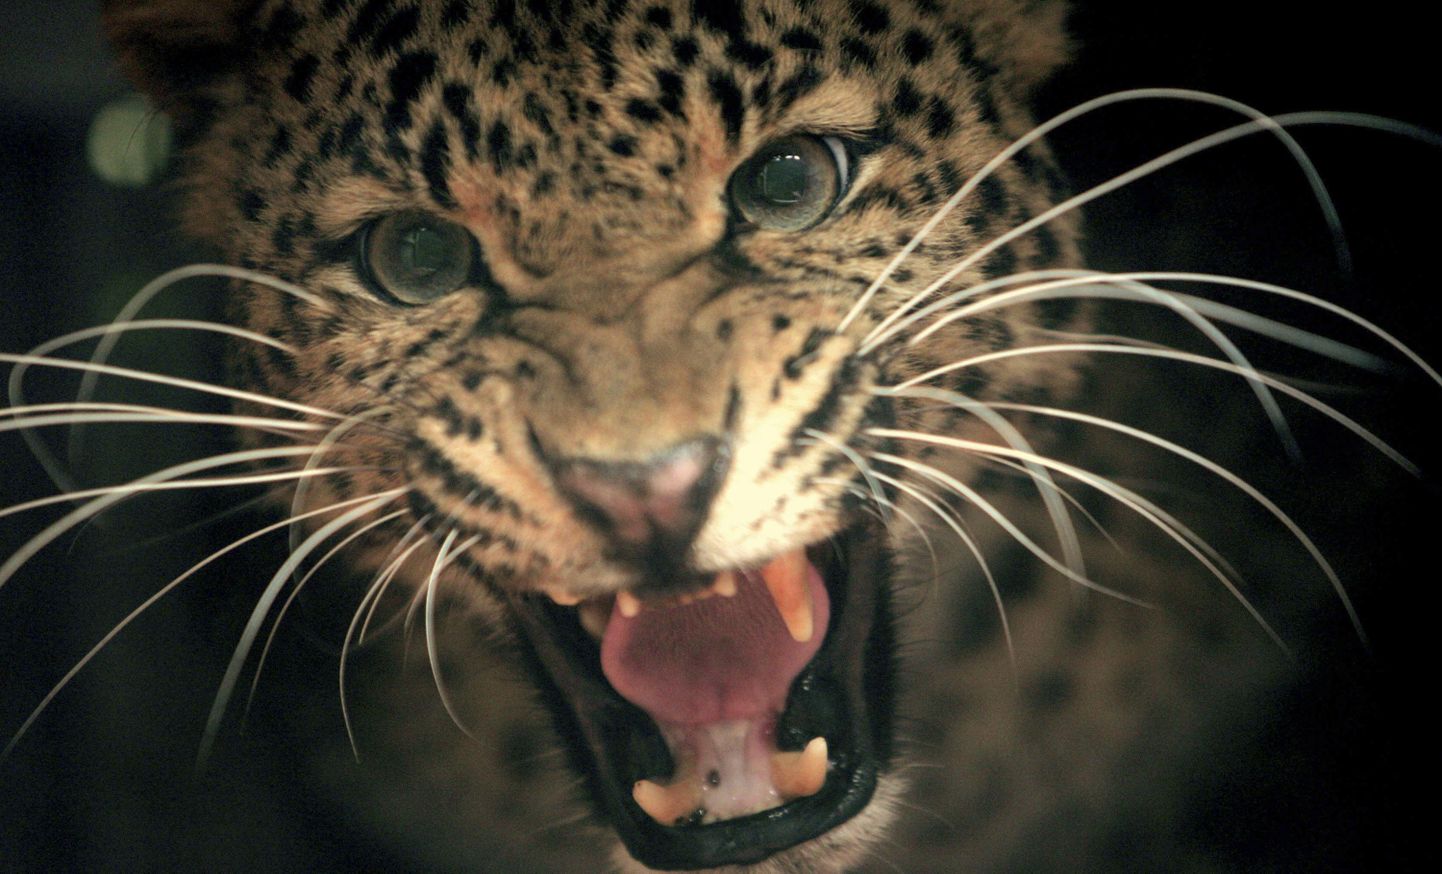 Леопард.